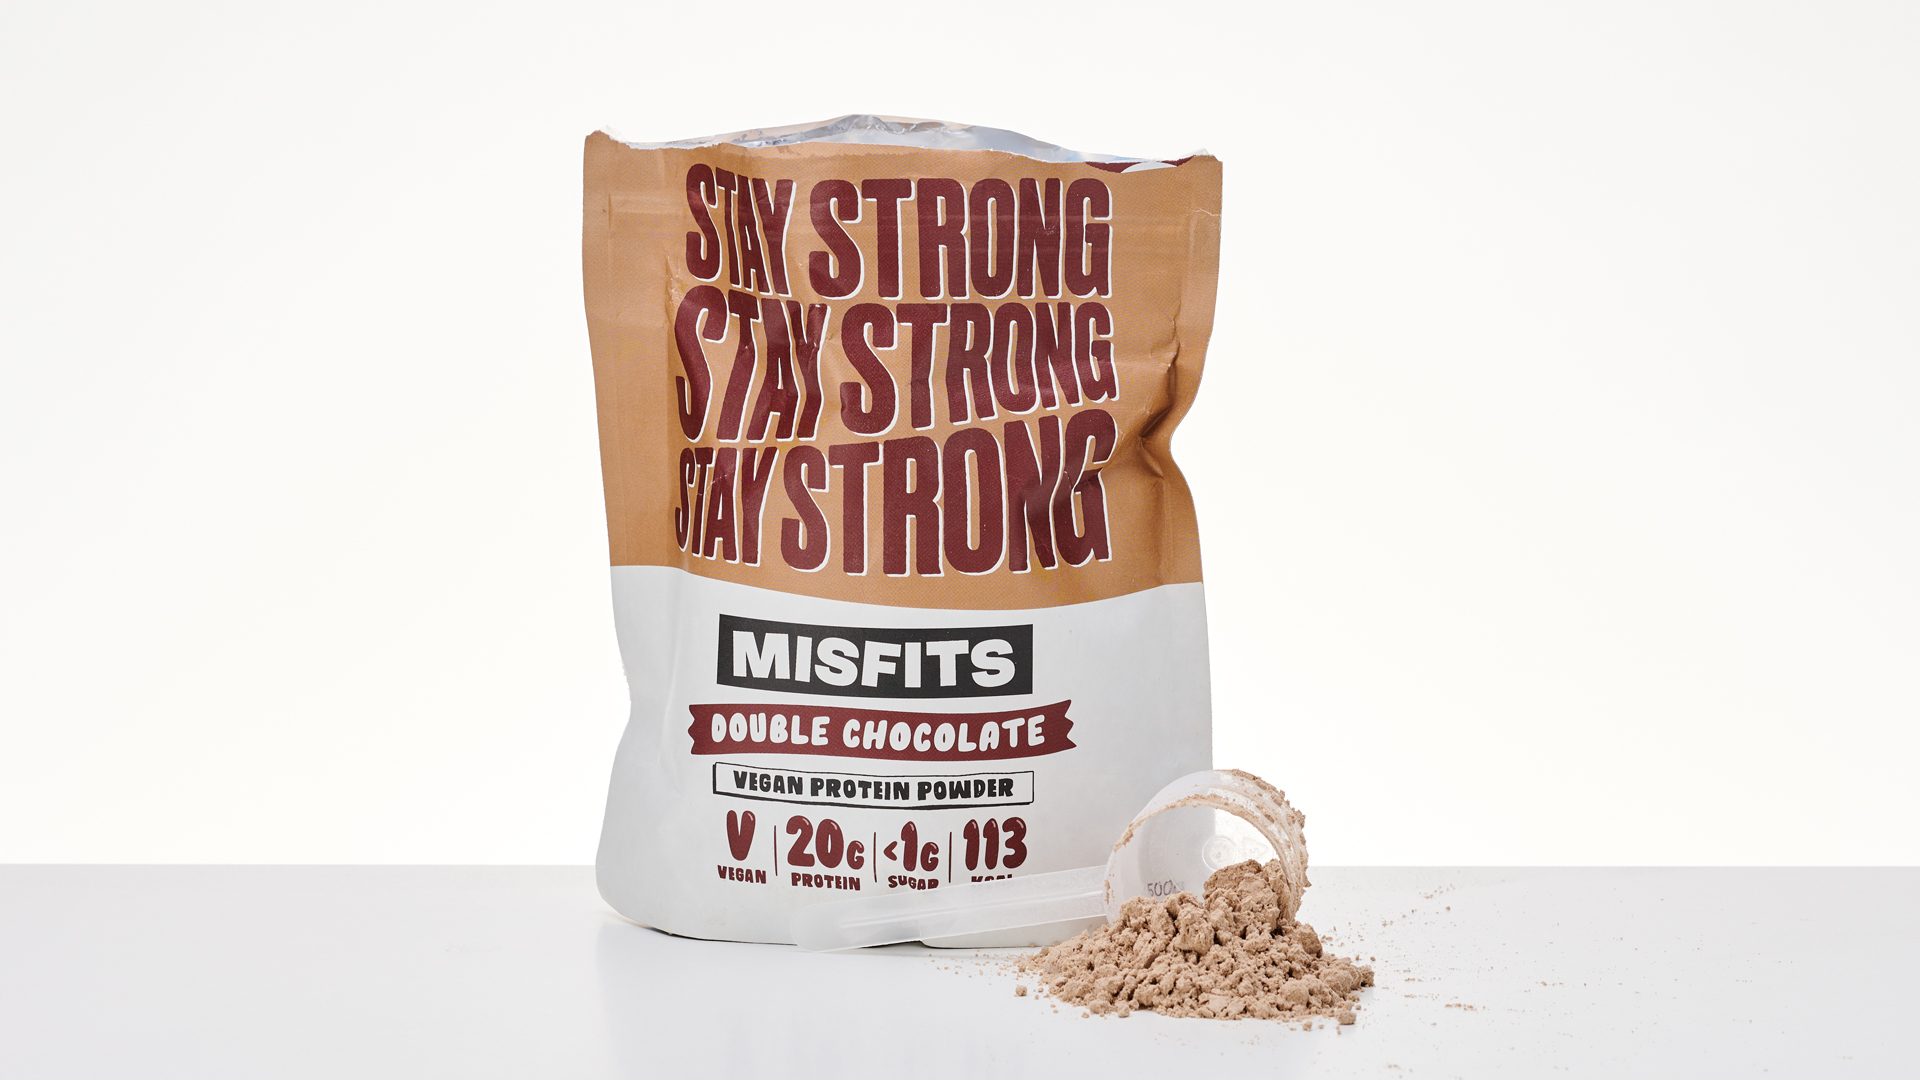 misfits vegan protein powder dark chocolate